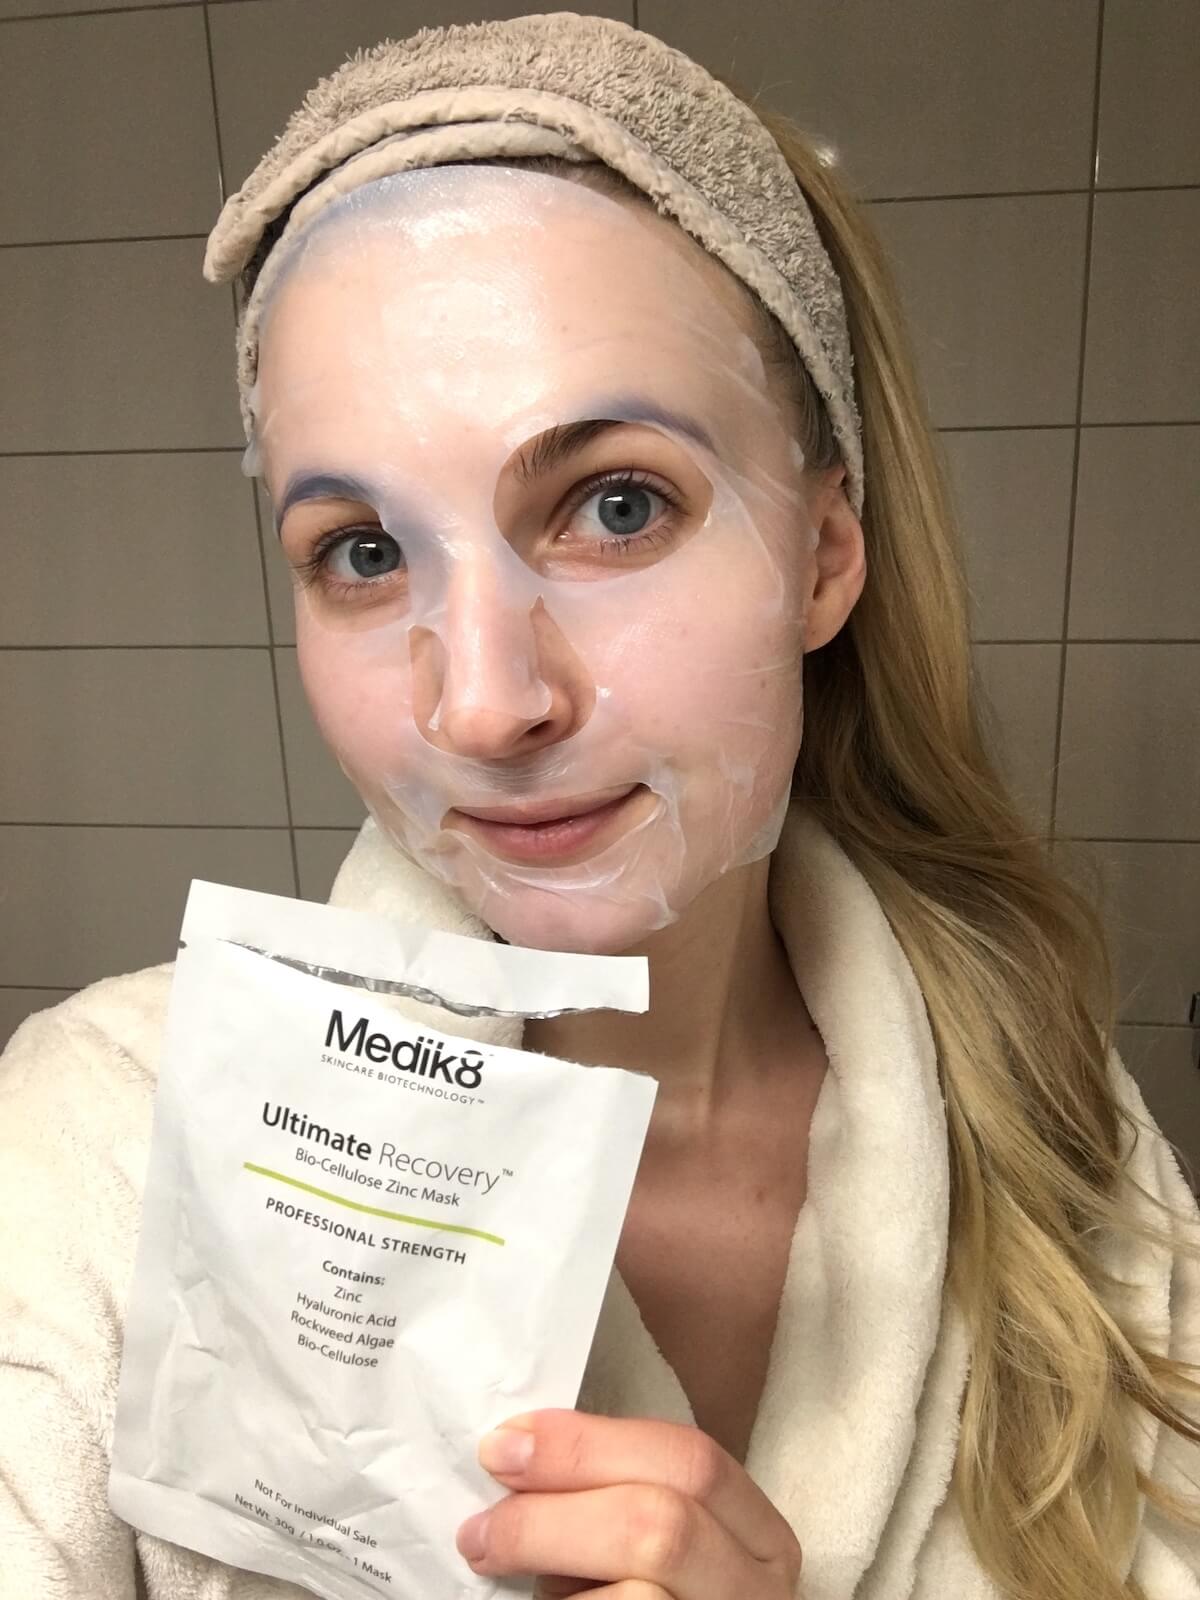 Bästa ansiktsmasken 2018? Medik8 Ultimate Recovery Mask